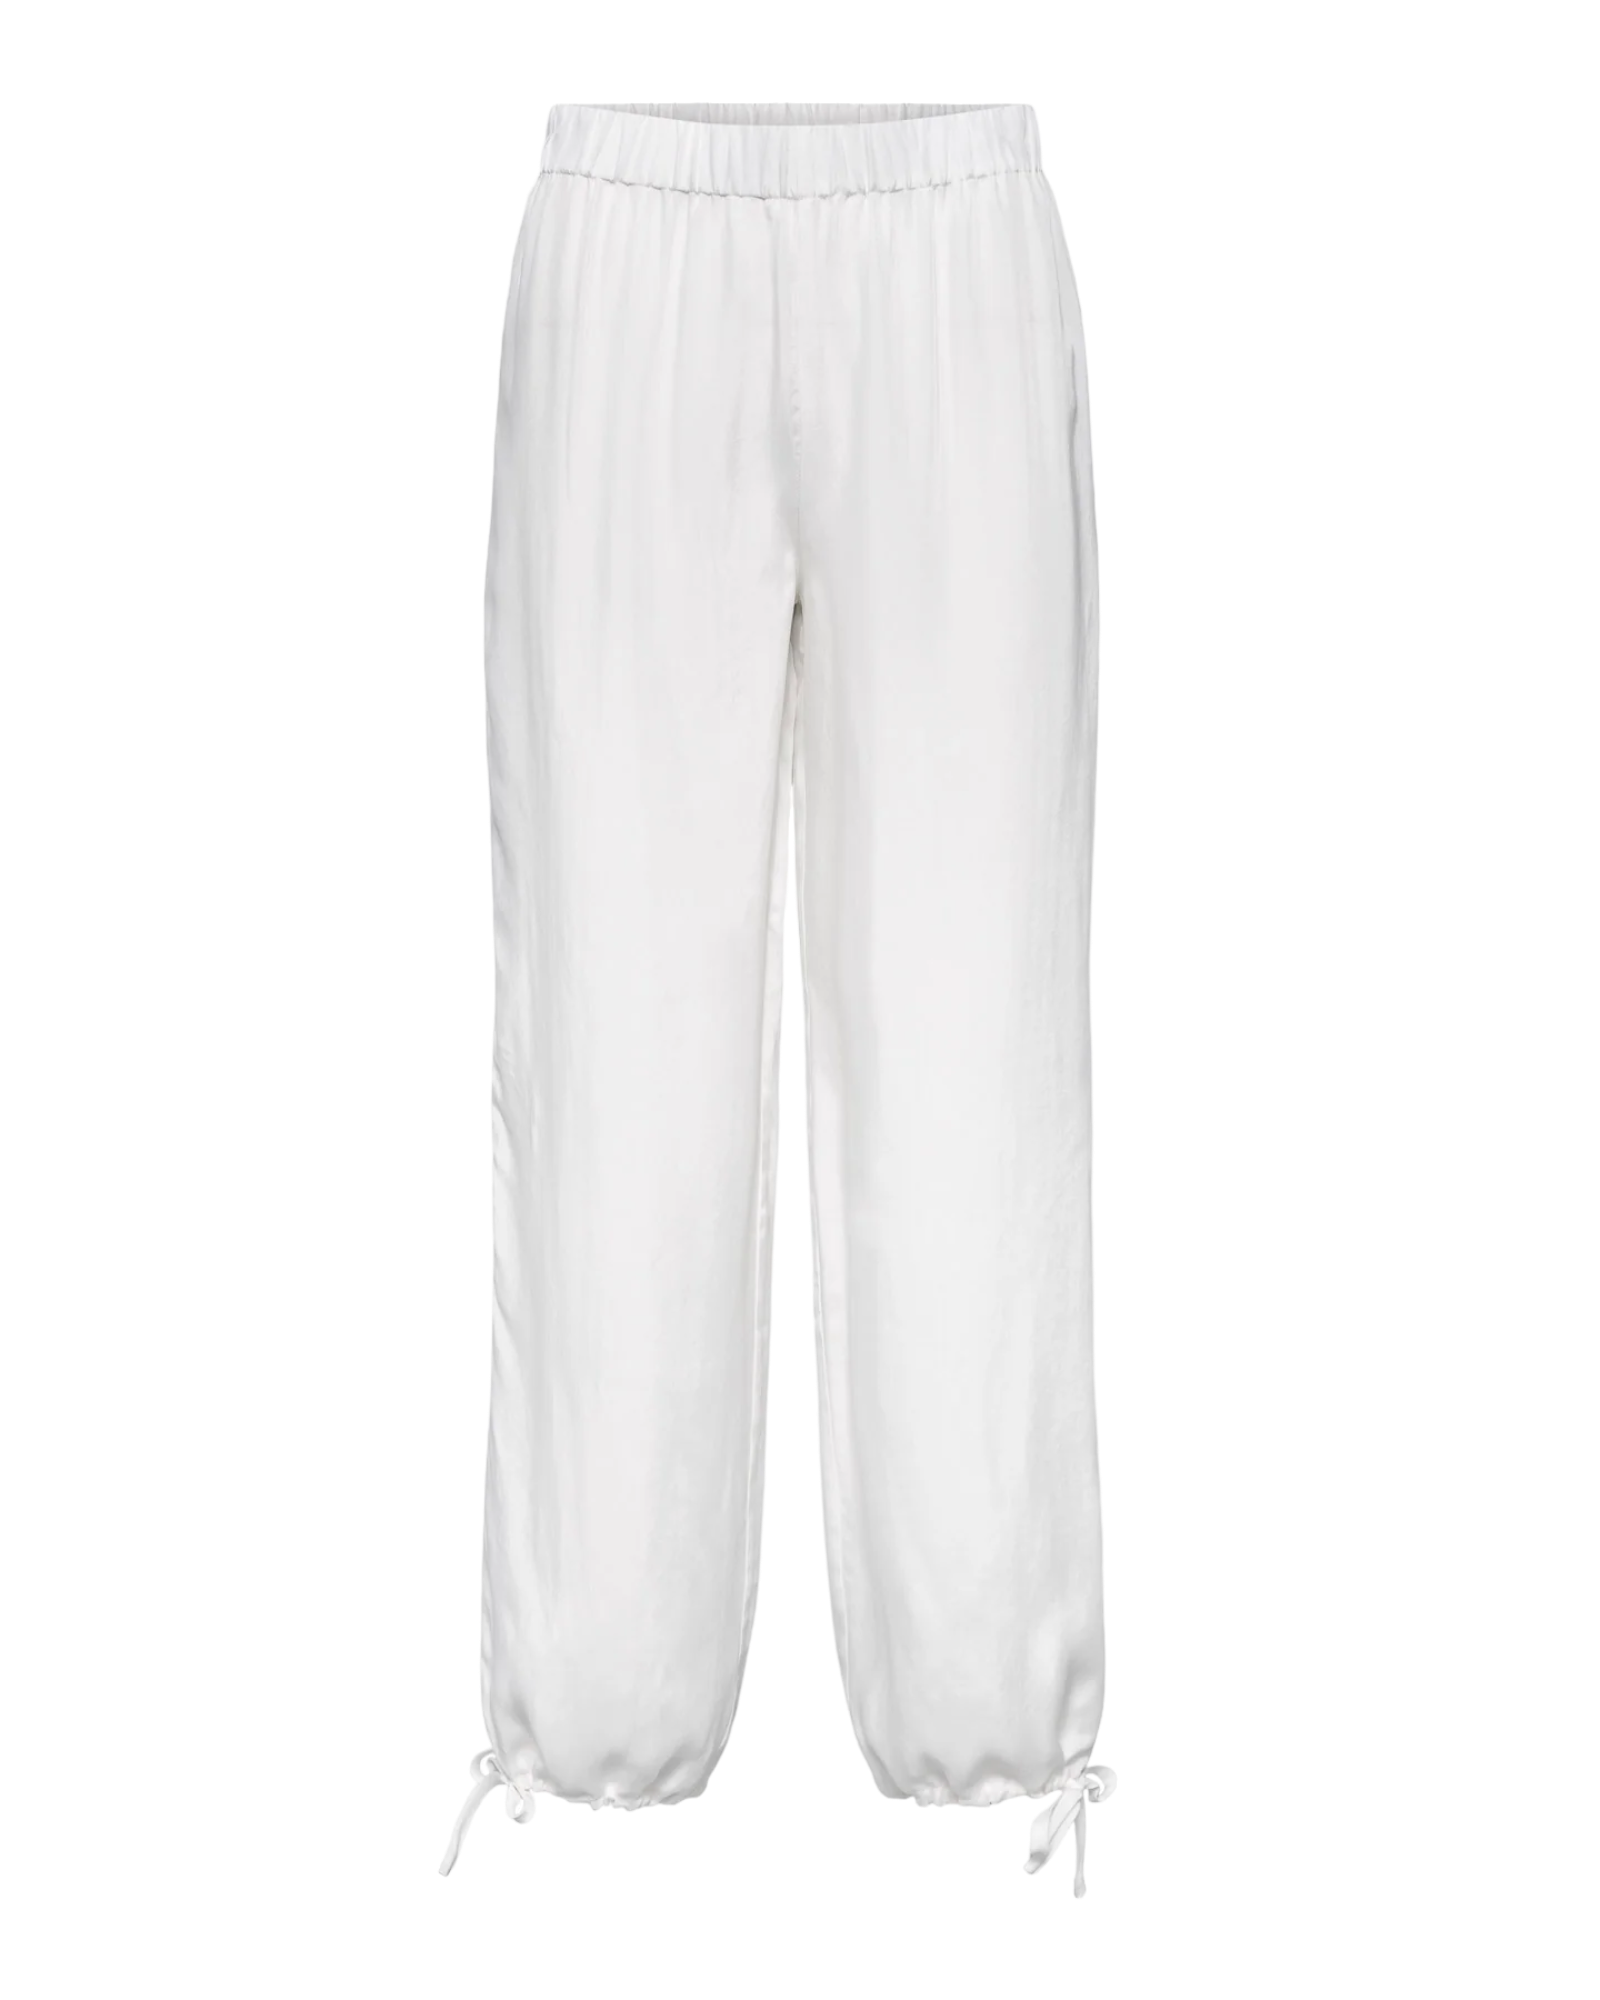 Mumbai II Pants - White